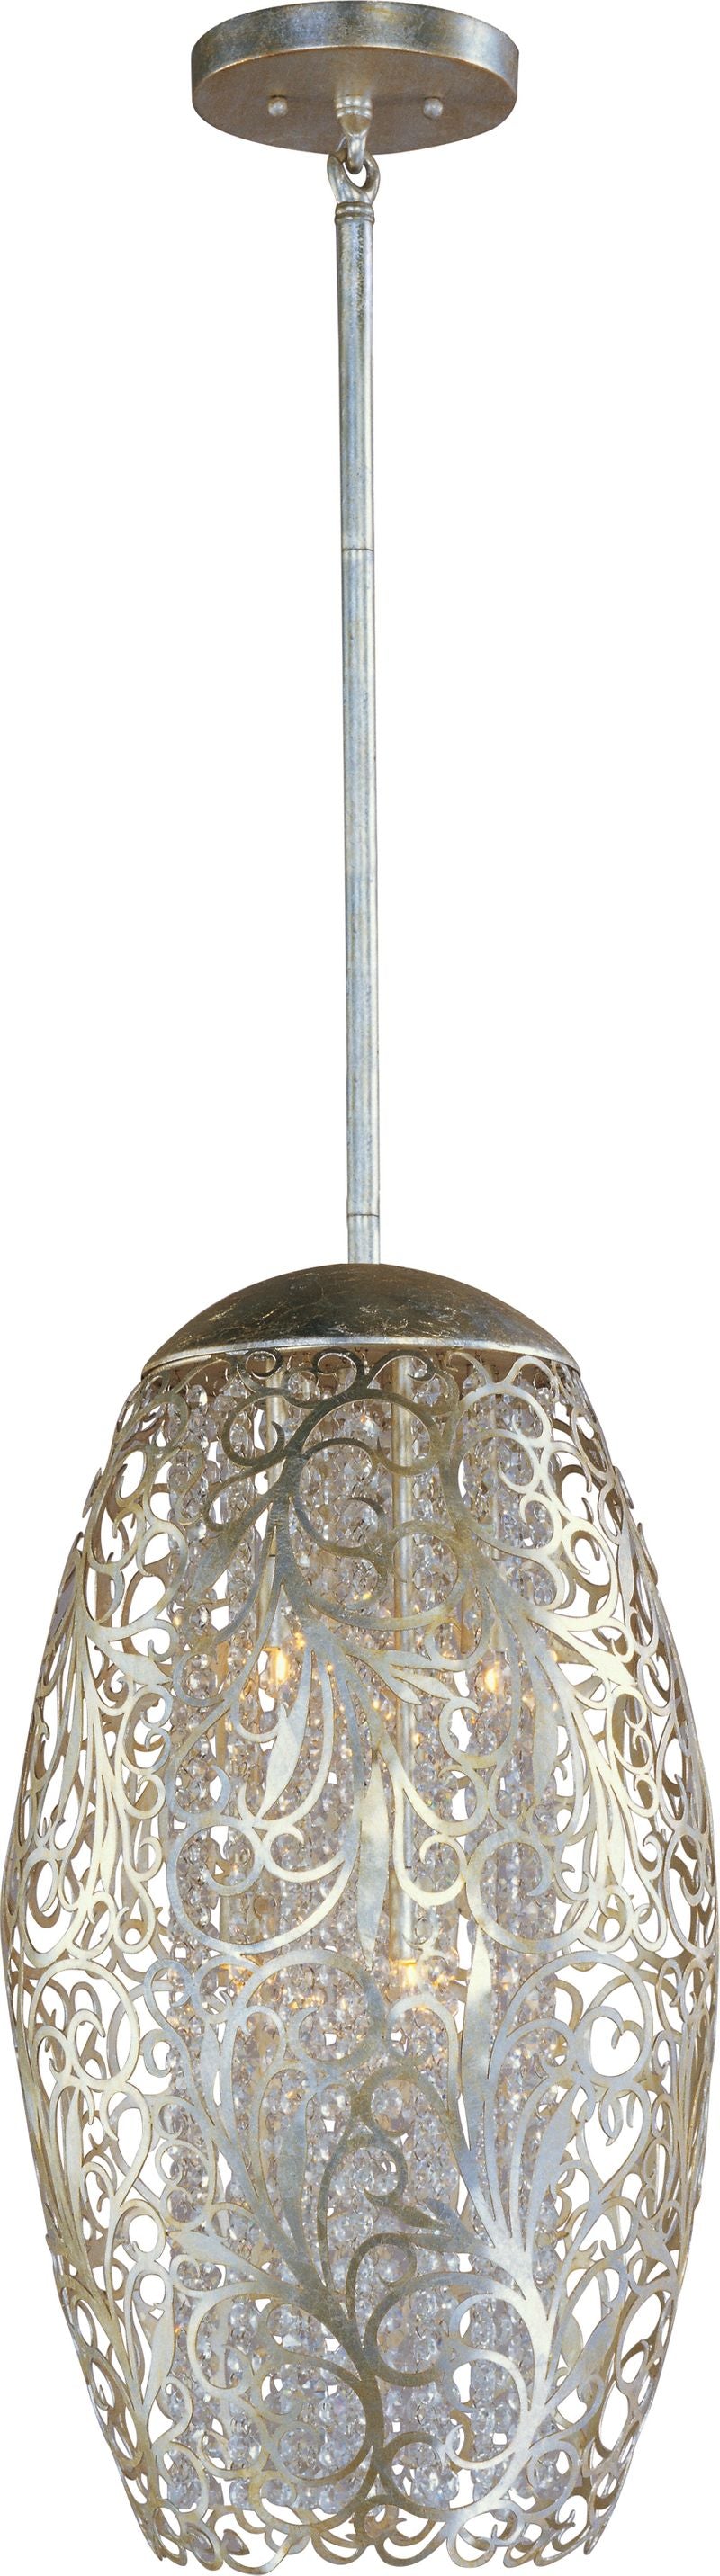 Arabesque 13' 6 Light Single Pendant in Golden Silver